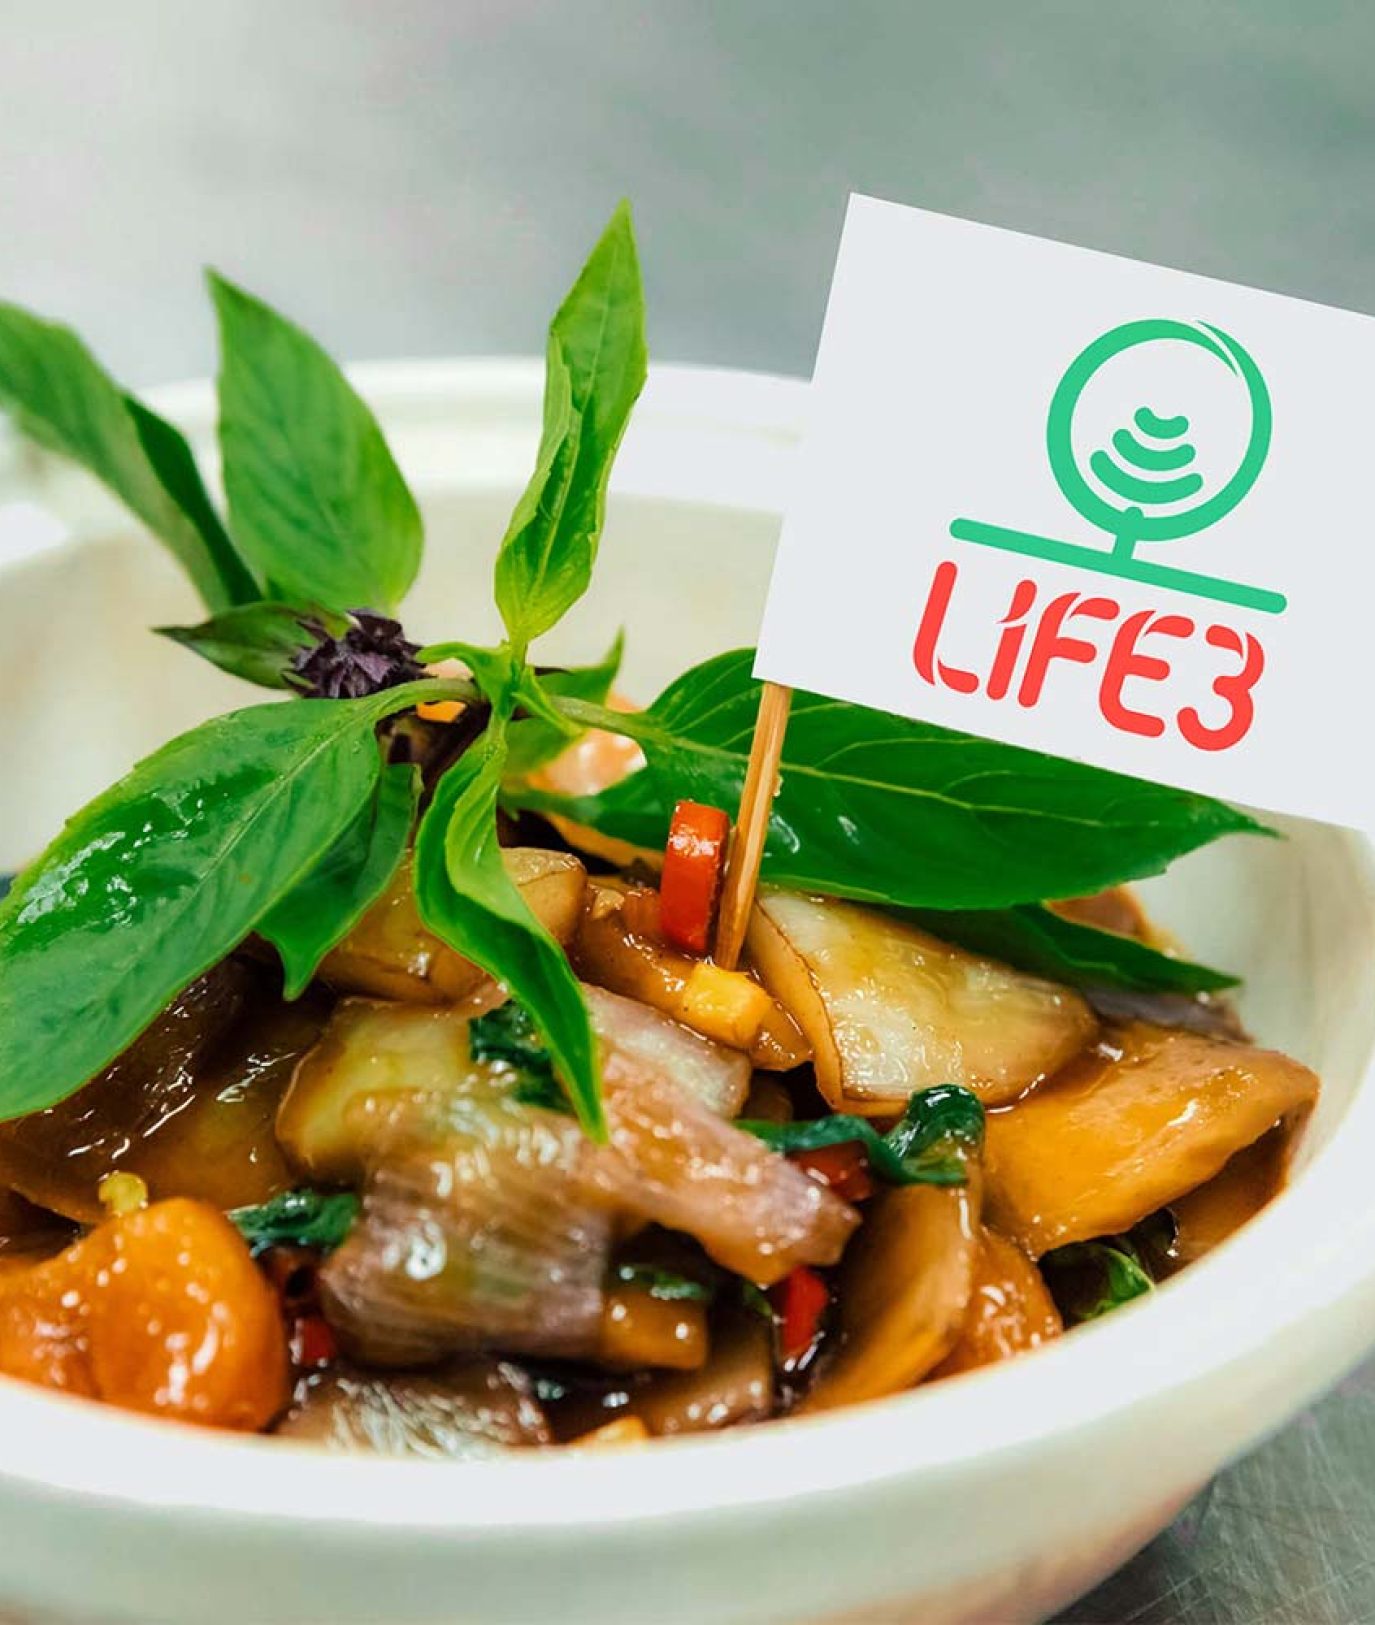 biotech-life3_singapour-protein-vegan-magazine